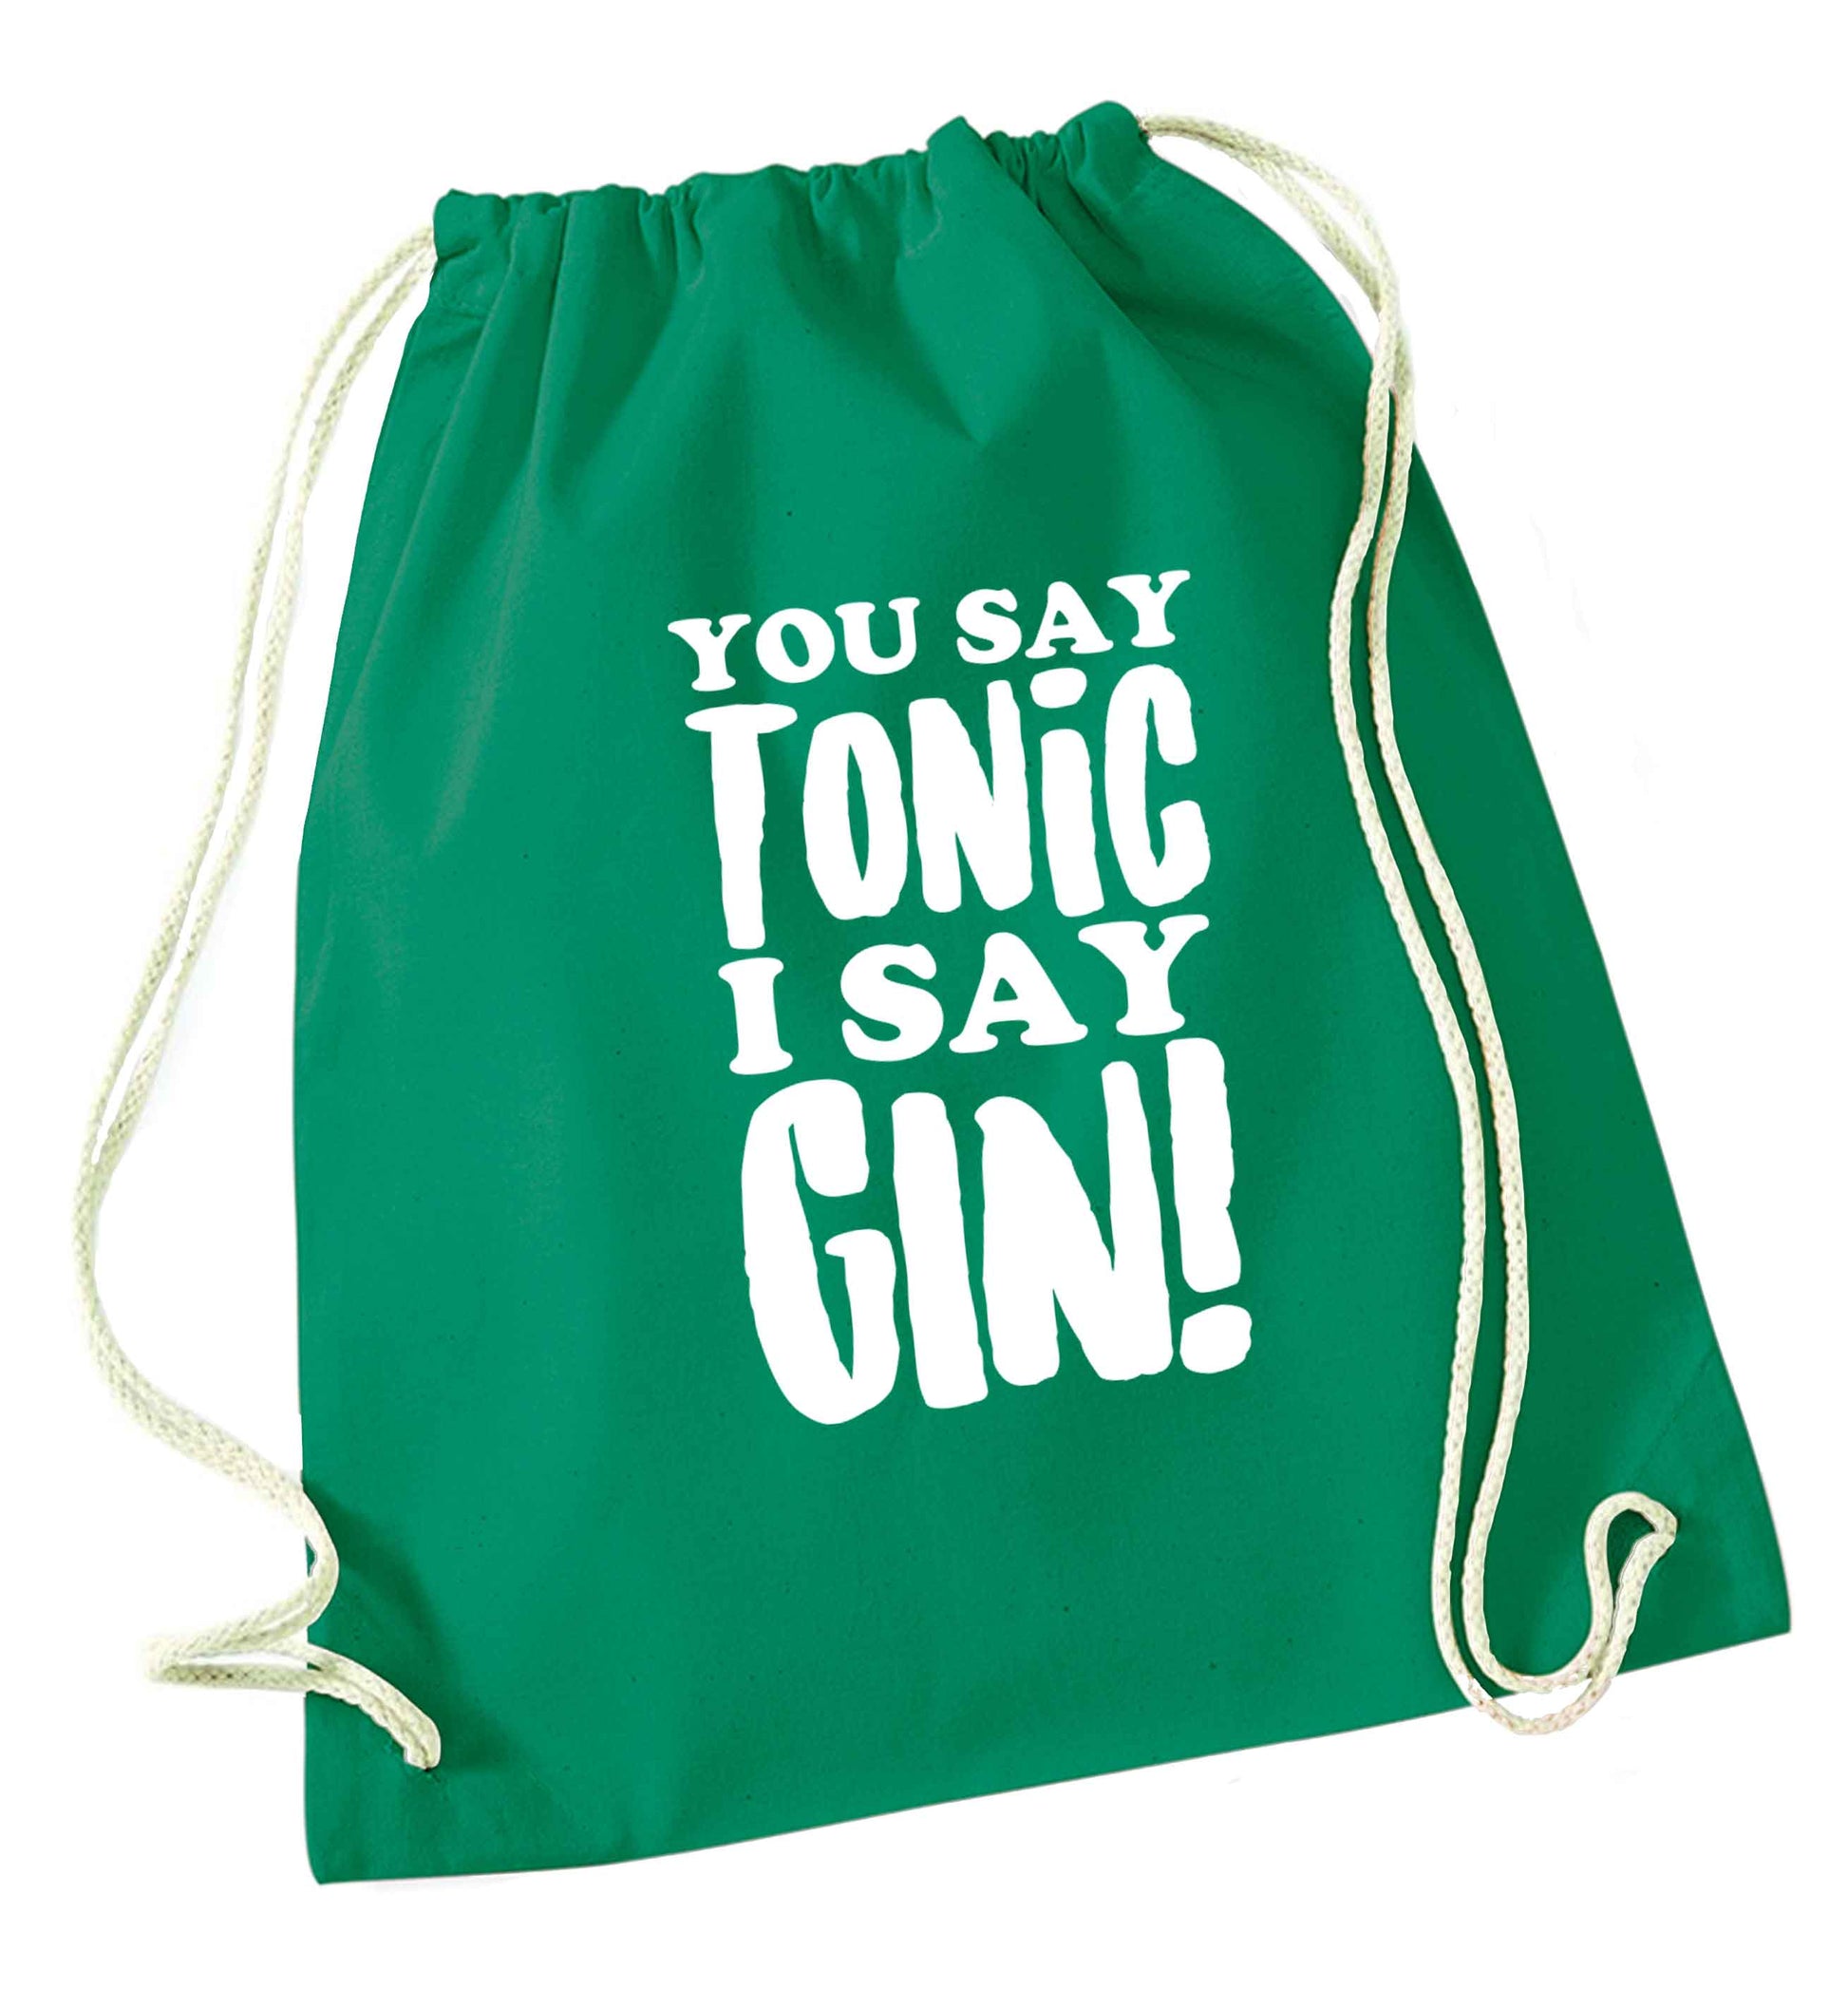 You say tonic I say gin green drawstring bag